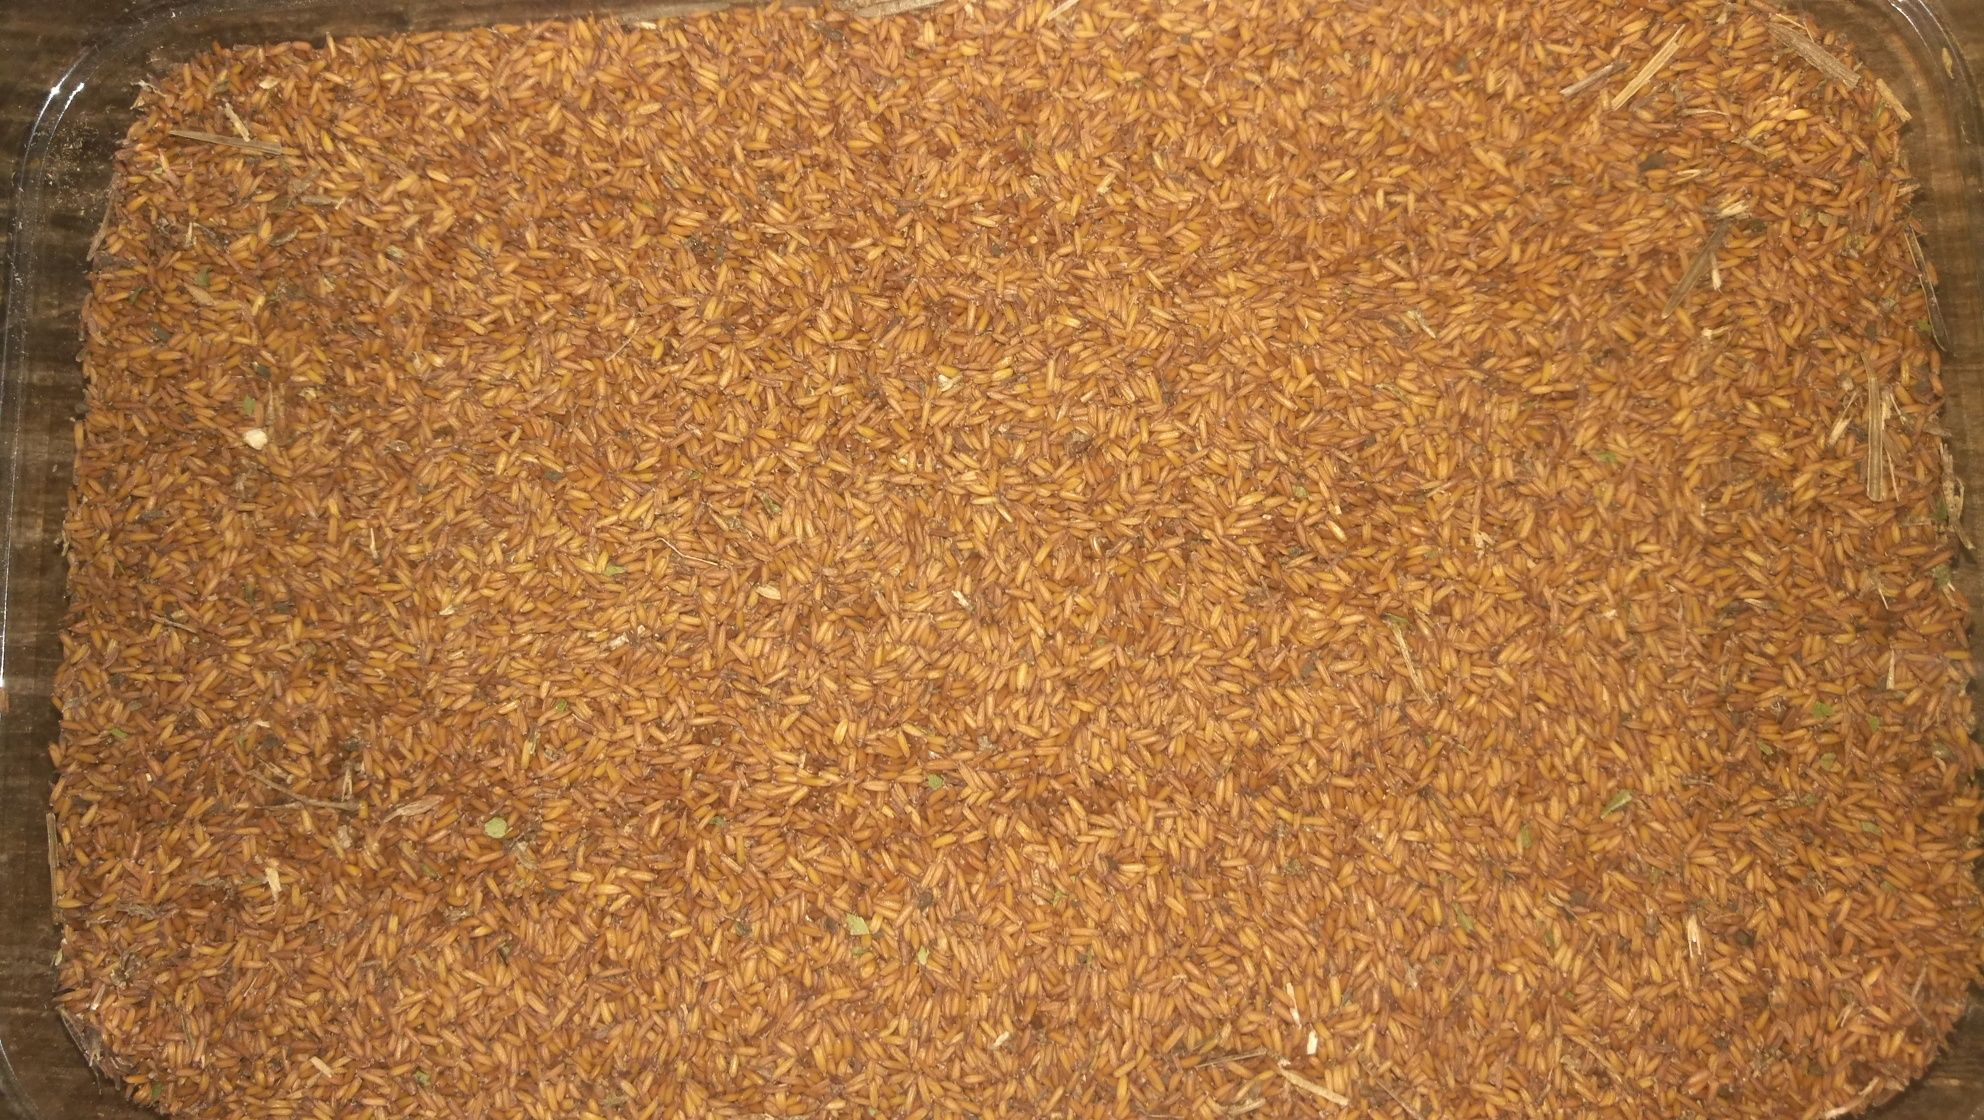 Stulisz miotłowy (roślina miododajna) werbesina, przegorzan